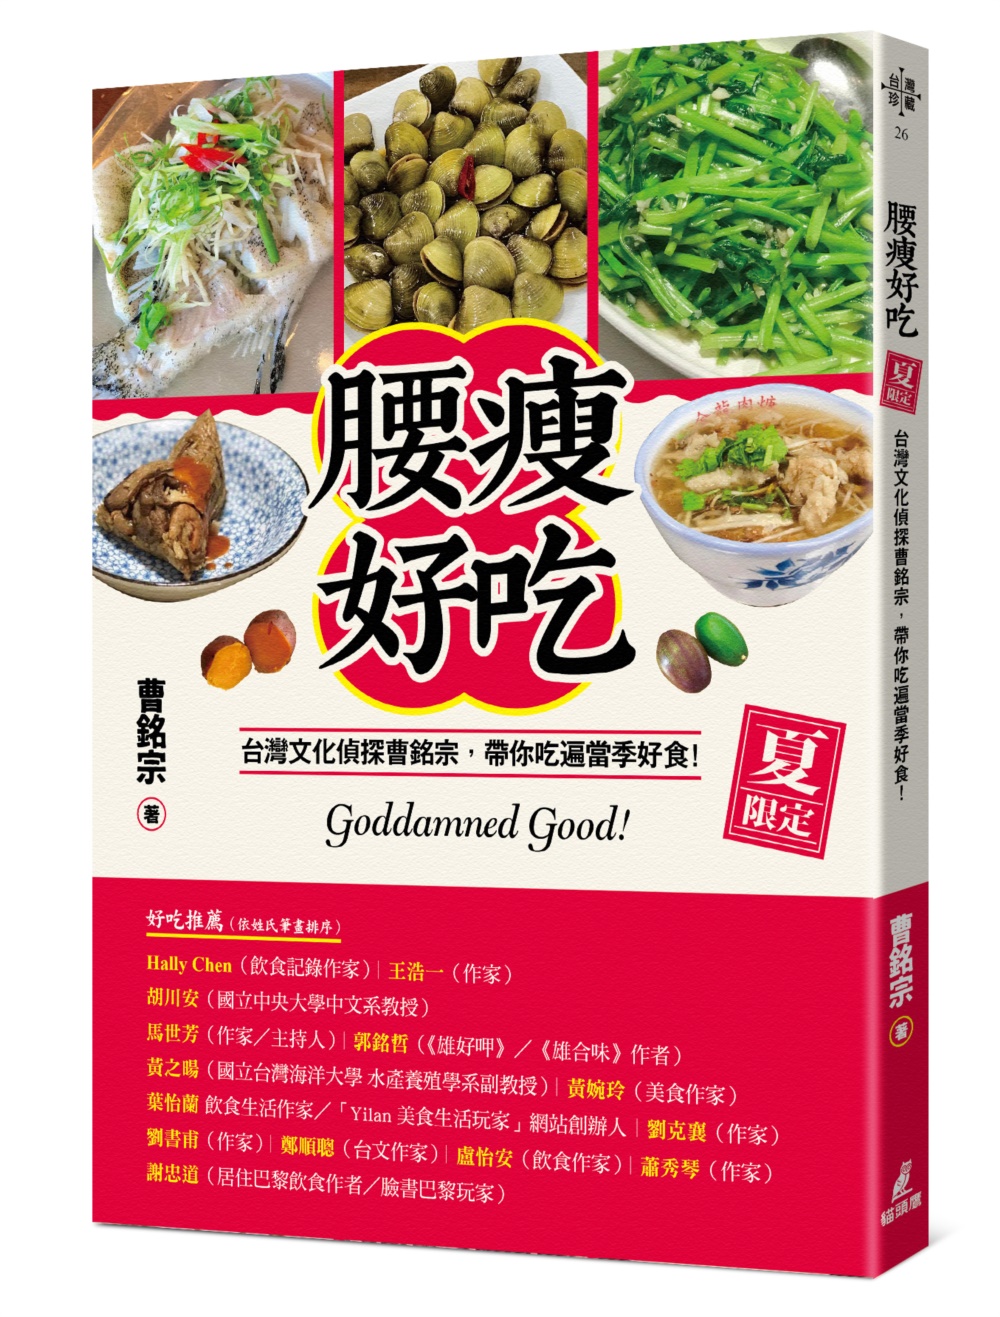 腰瘦好吃（夏限定）台灣文化偵探曹銘宗，帶你吃遍當季好食！